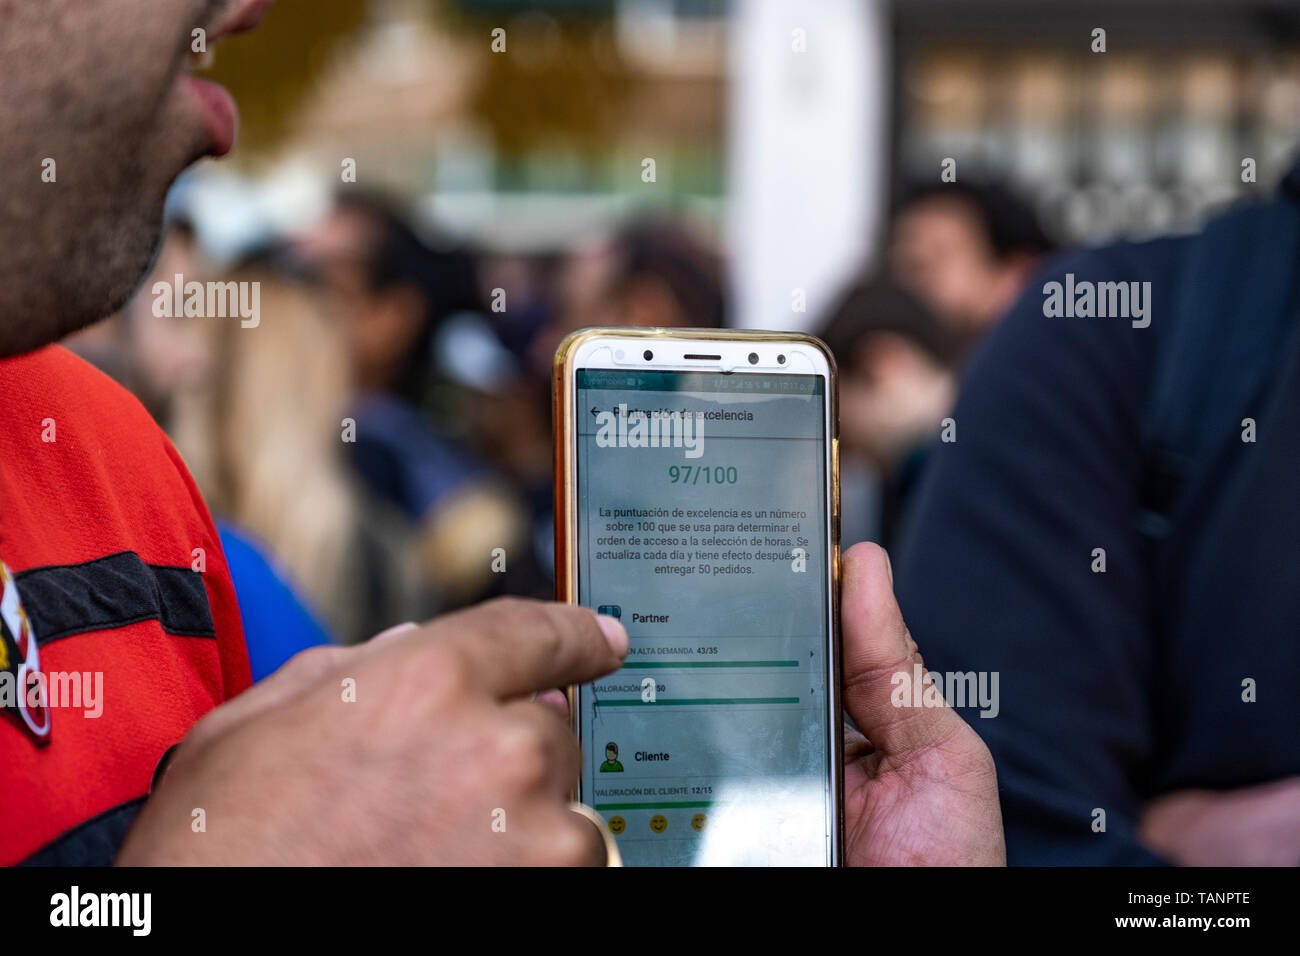 Un trabajador autónomo de la de entrega Glovo es visto mostrando una app con un puntaje de excelencia les permite acceder a la orden de acceso a la selección de